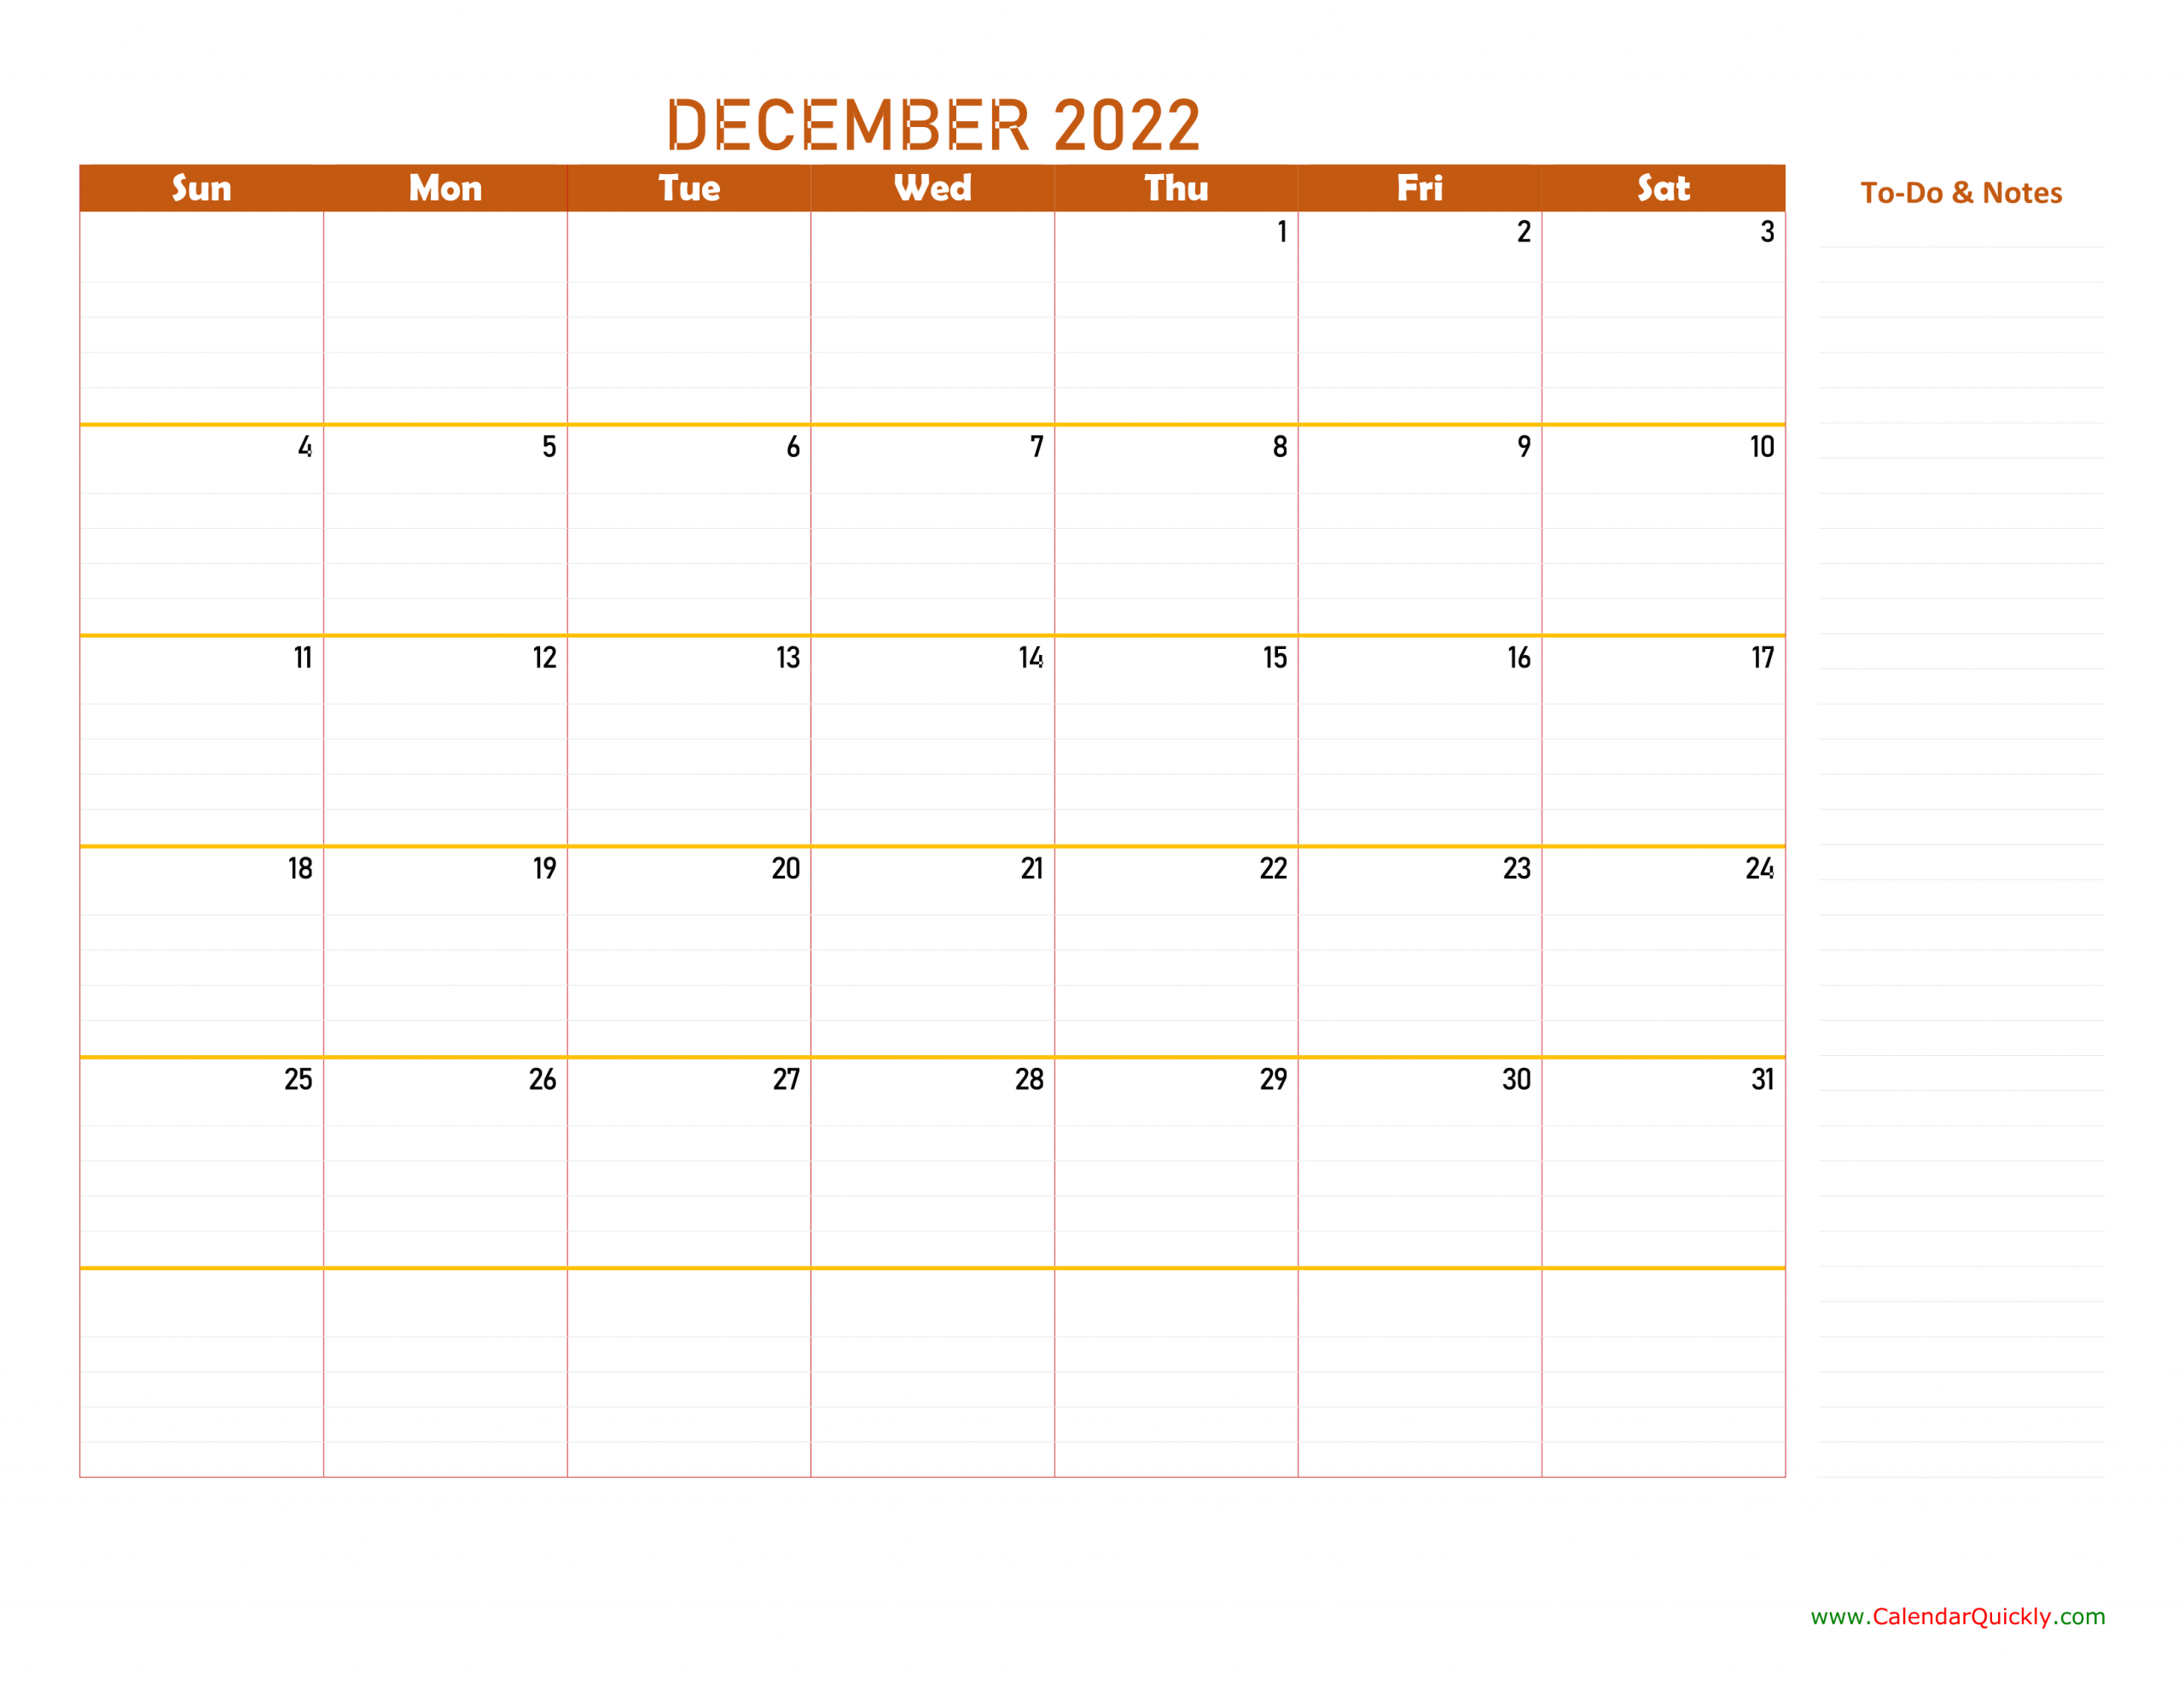 December 2022 Calendar | Calendar Quickly December Printable Calendar 2022